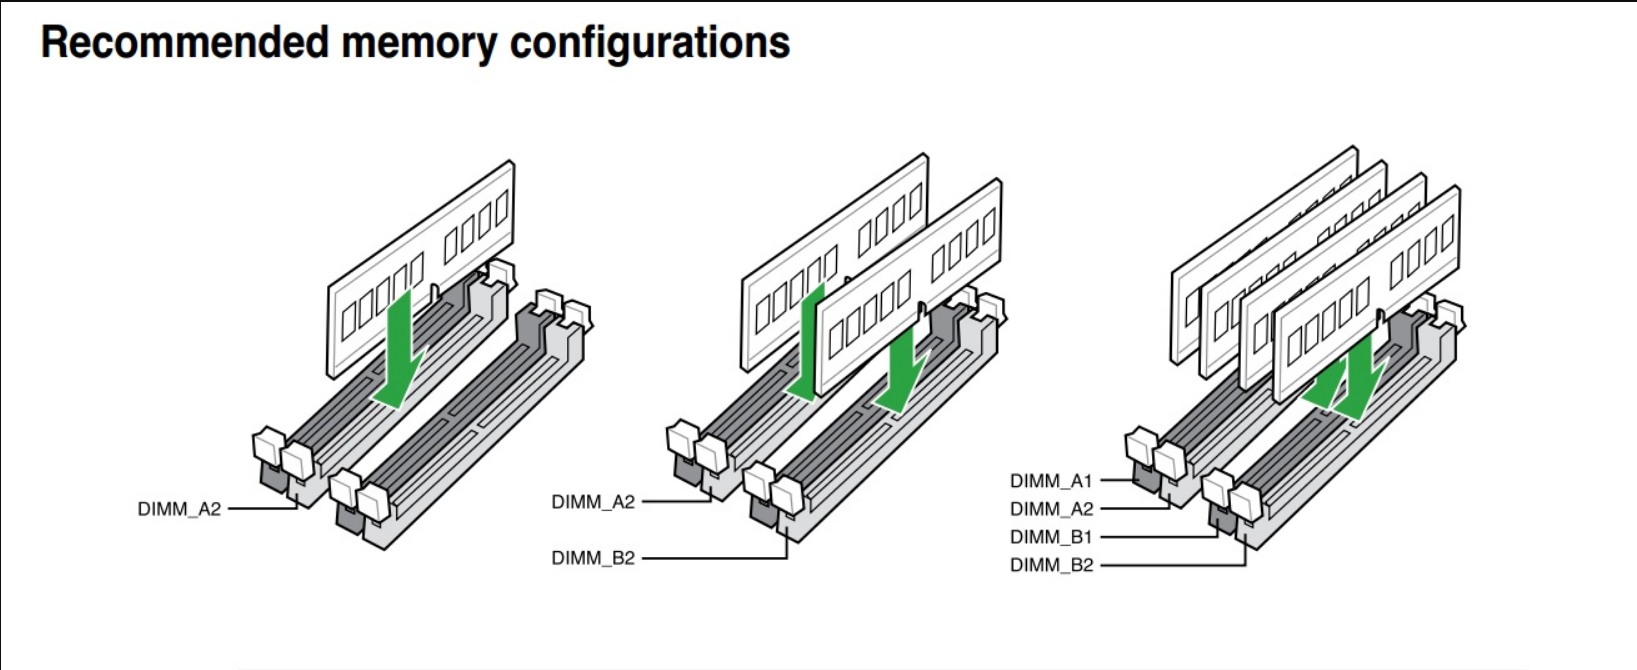 4 канальная память. Как поставить 3 планки оперативной памяти ddr3. Как правильно ставить планки оперативной памяти ddr3. Двухканальный режим оперативной памяти MS-7390. Двухканальный режим оперативной памяти ddr3.